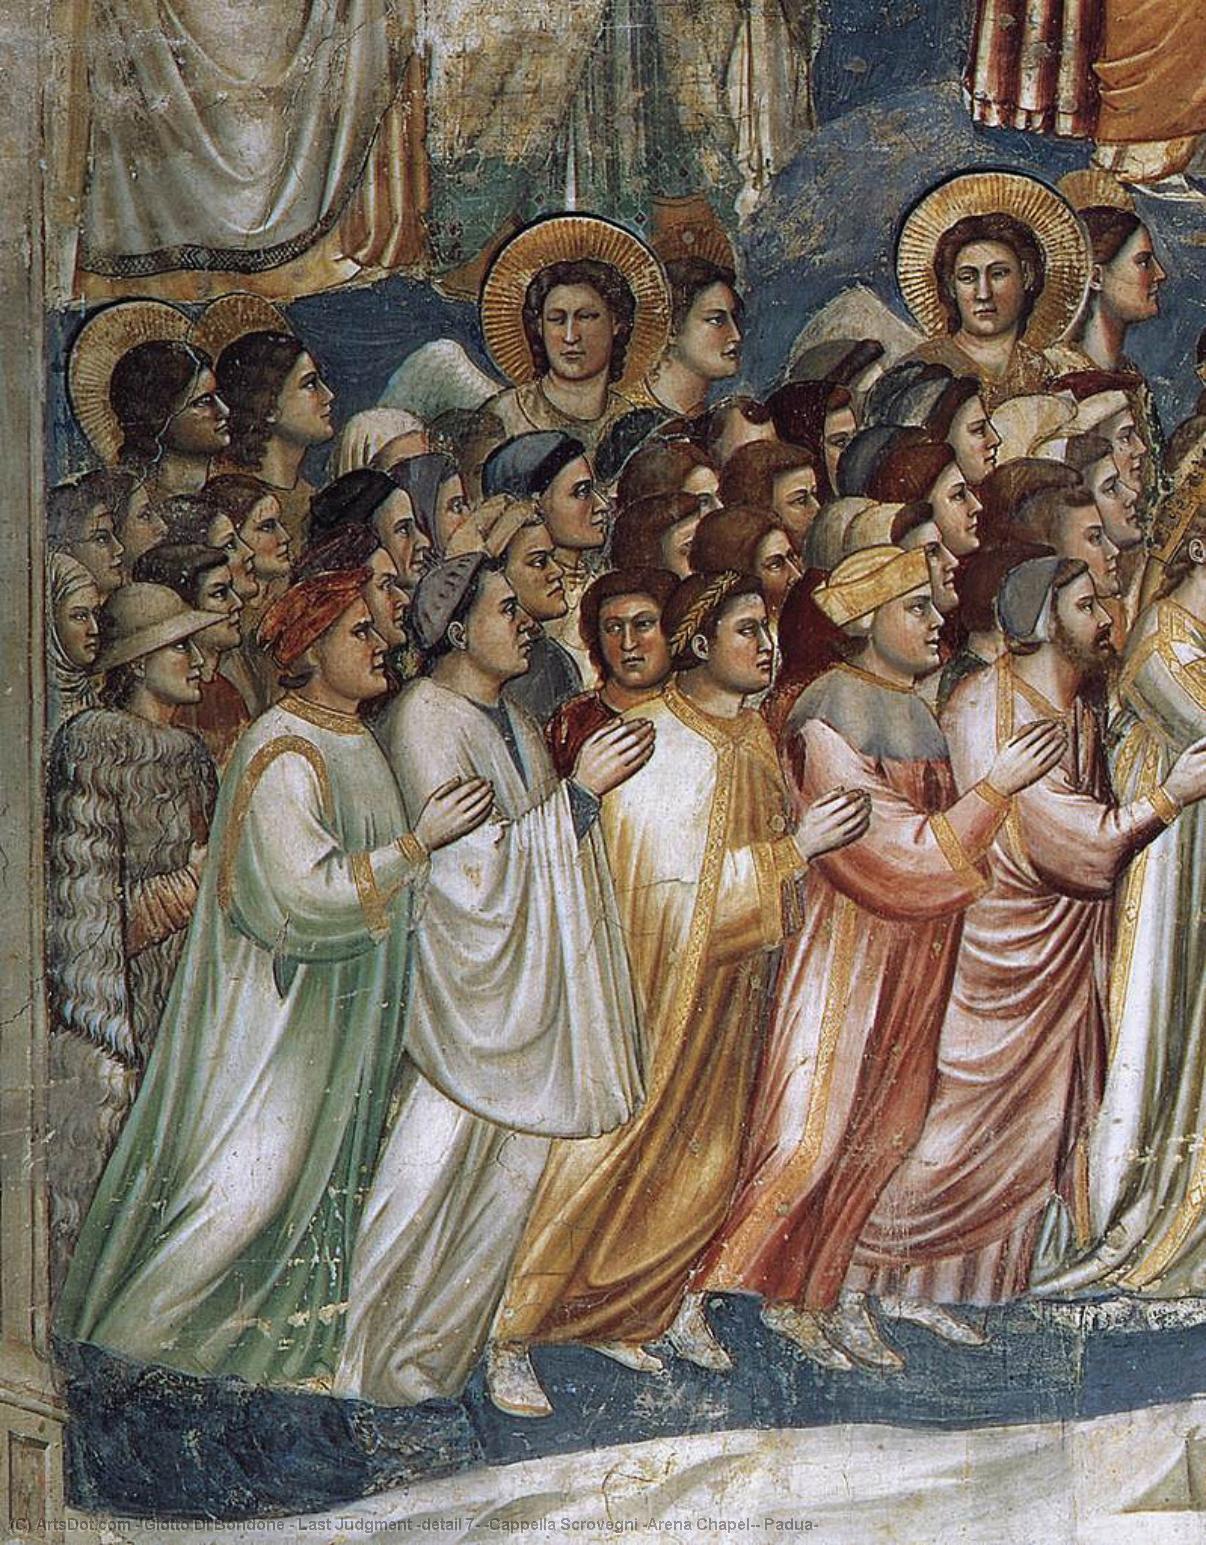 Wikioo.org - Bách khoa toàn thư về mỹ thuật - Vẽ tranh, Tác phẩm nghệ thuật Giotto Di Bondone - Last Judgment (detail 7) (Cappella Scrovegni (Arena Chapel), Padua)